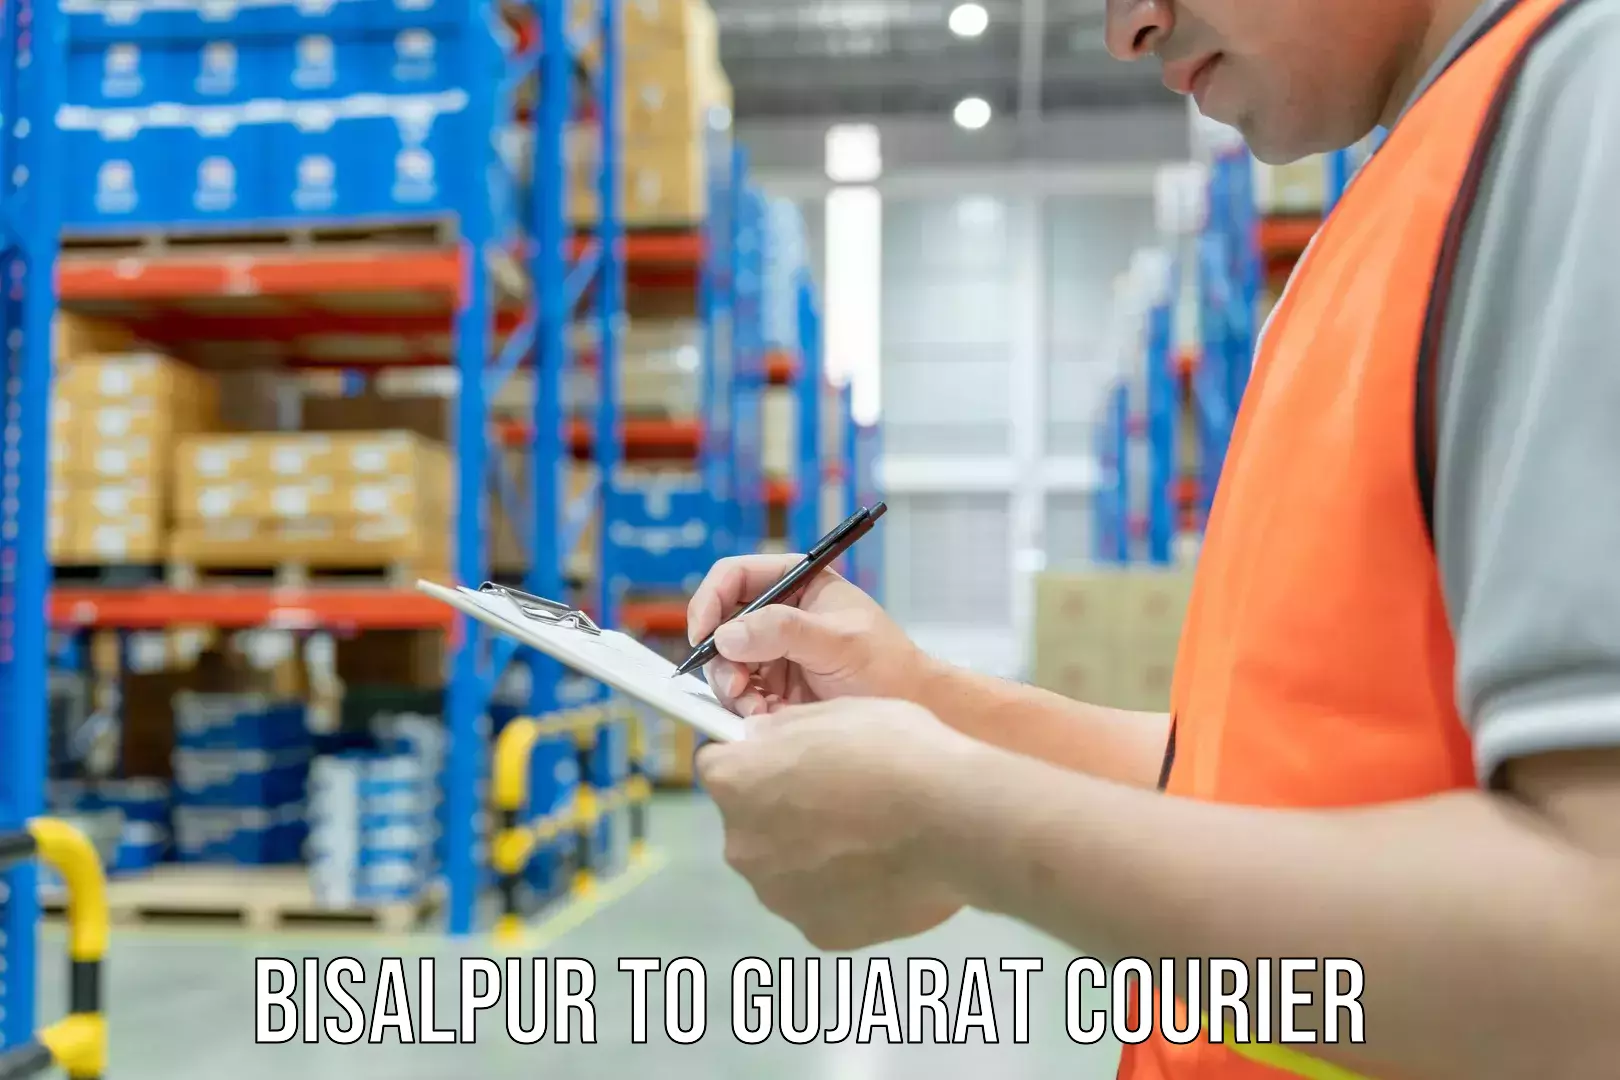 Courier service innovation Bisalpur to Gujarat